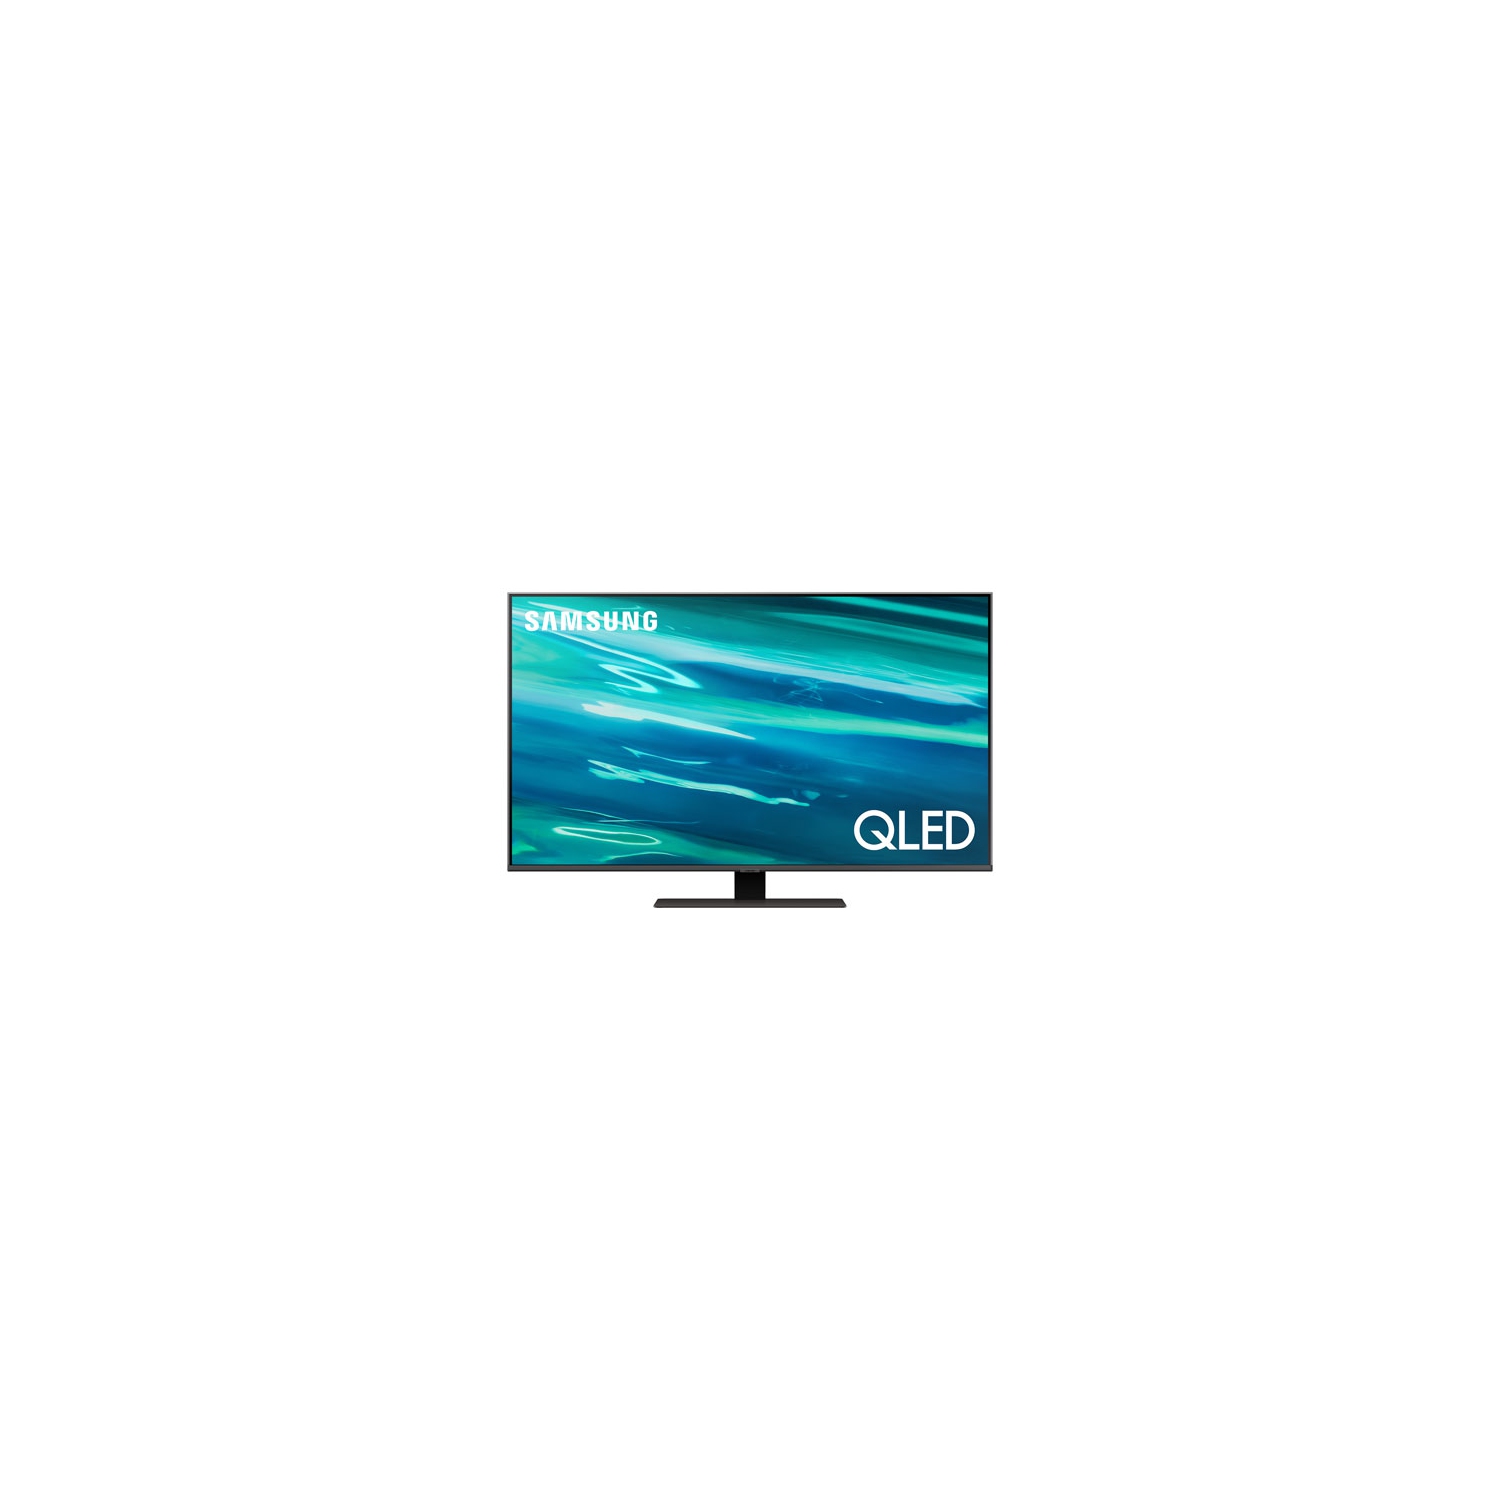 Refurbished (Excellent) - Samsung 50" 4K UHD HDR QLED Tizen OS Smart TV (QN50Q80AAFXZC) - 2021 - Titan Black